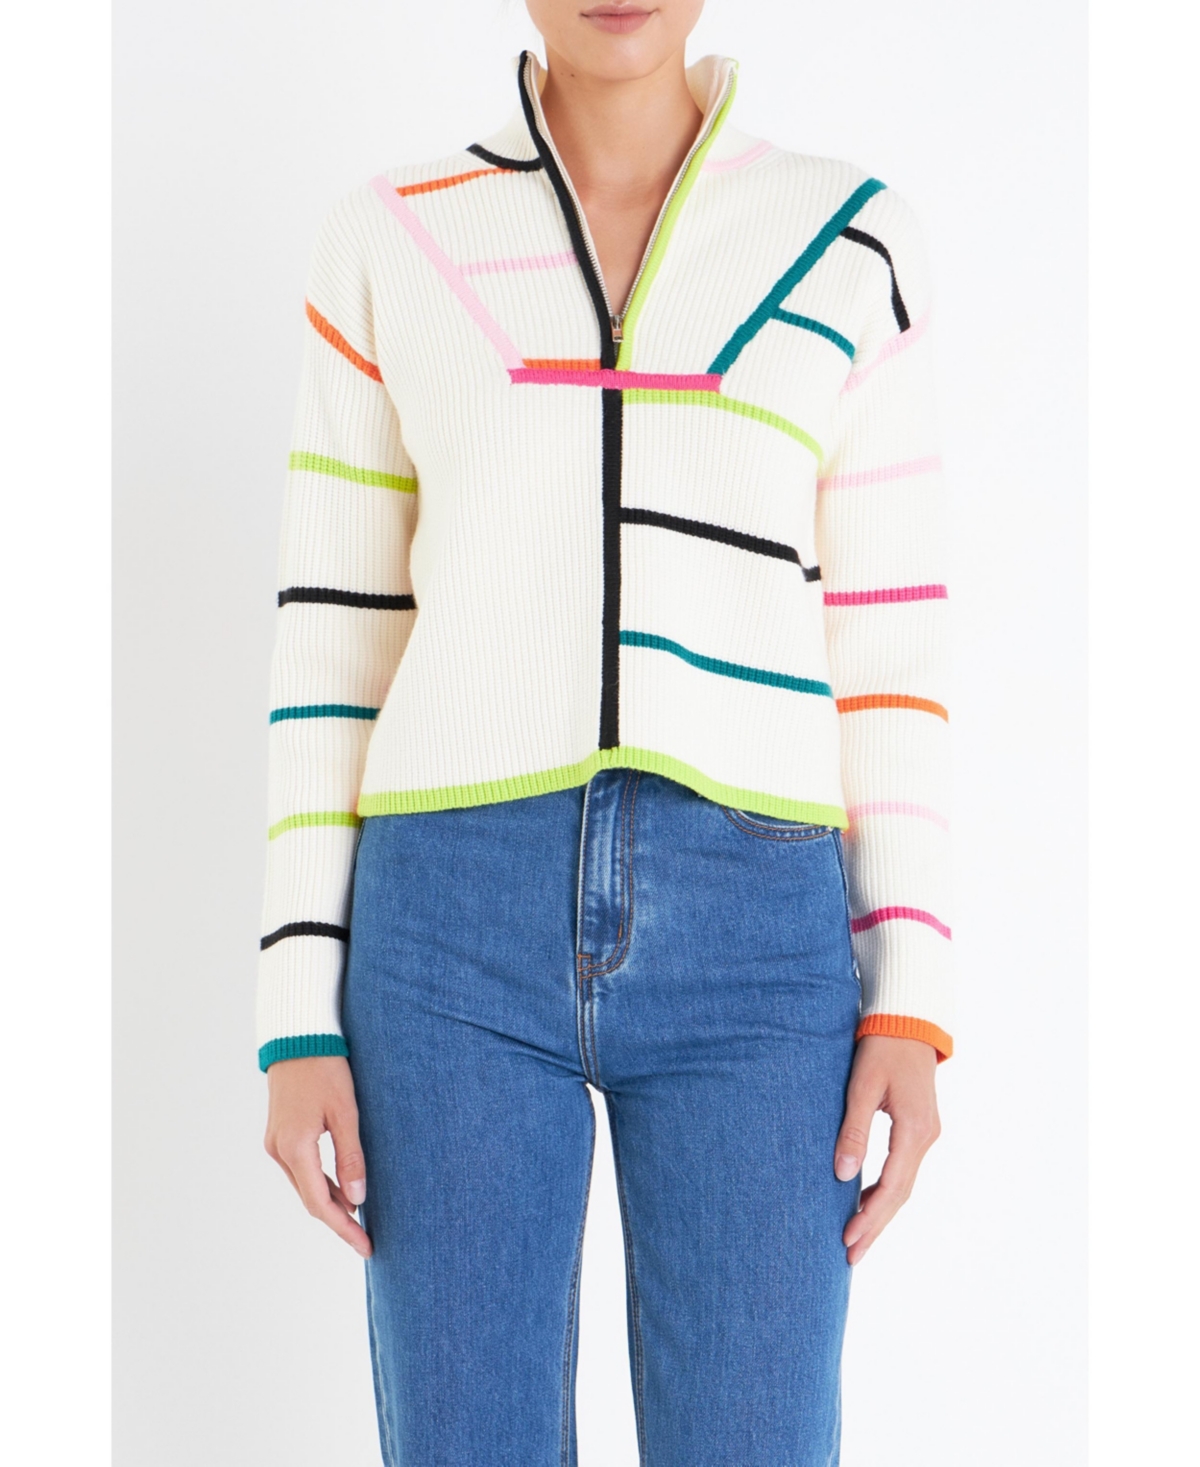 Women's Multi Colored Stripe Sweater - Multi